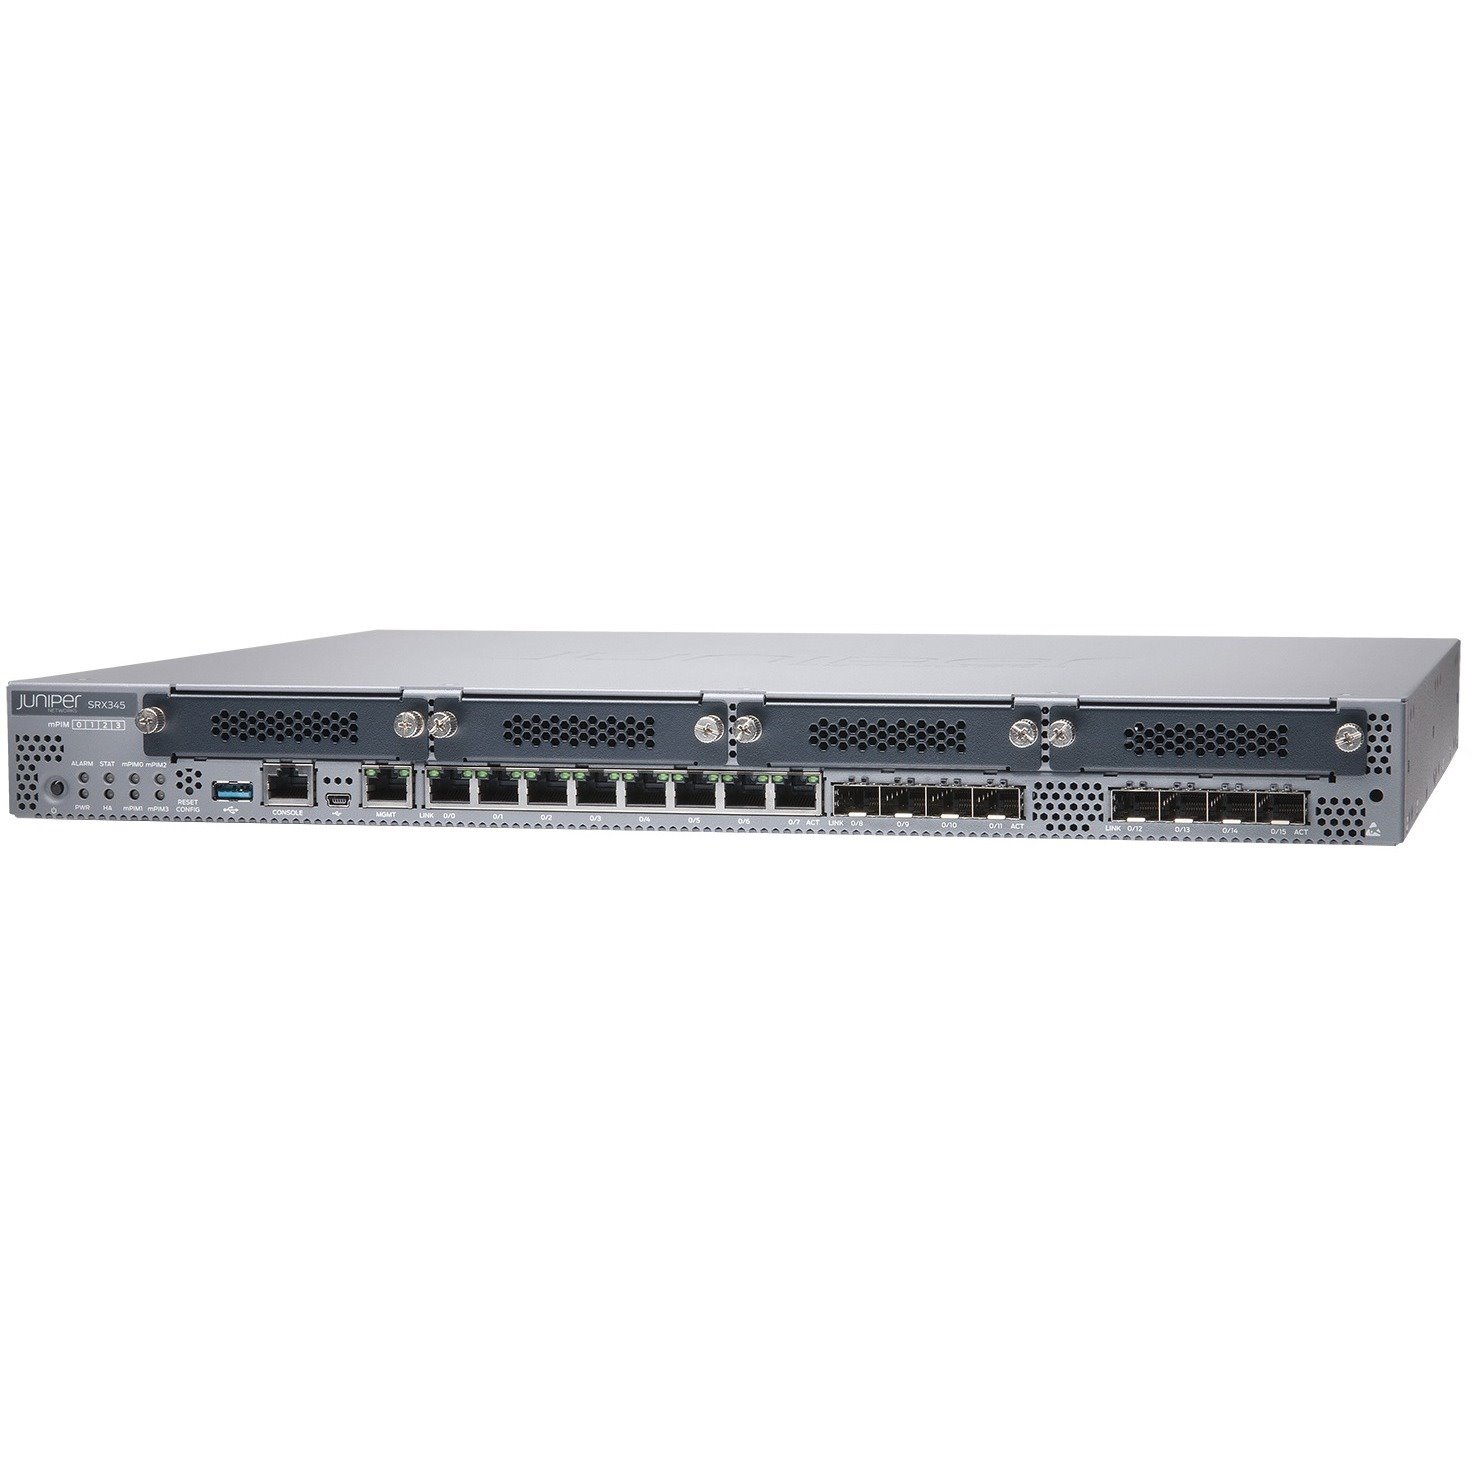 Juniper SRX SRX345 Router - TAA Compliant